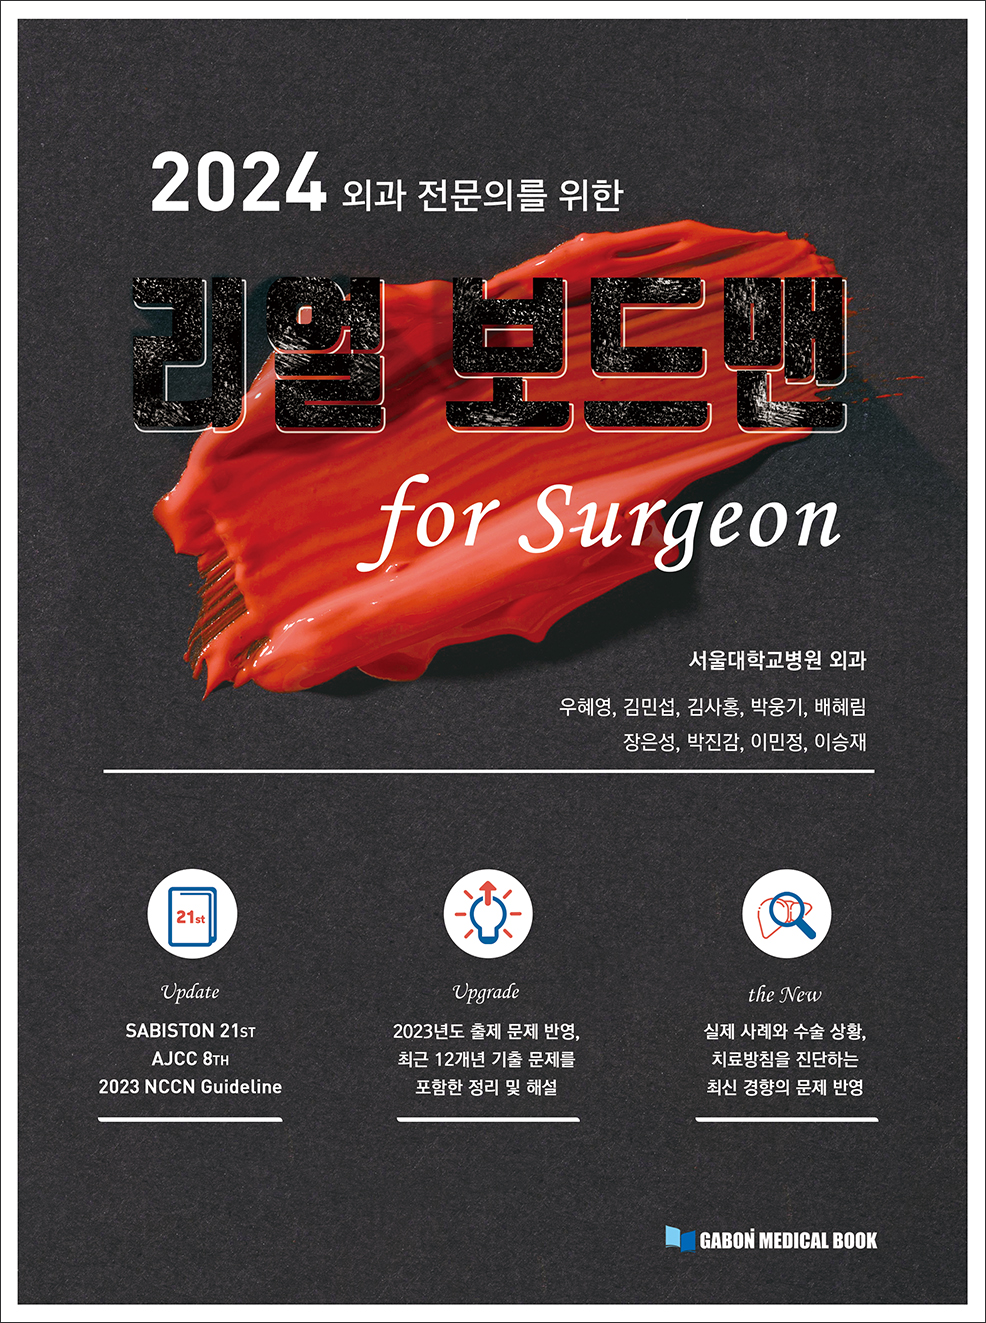 2024 외과전문의를 위한 리얼보드맨 for surgeon 